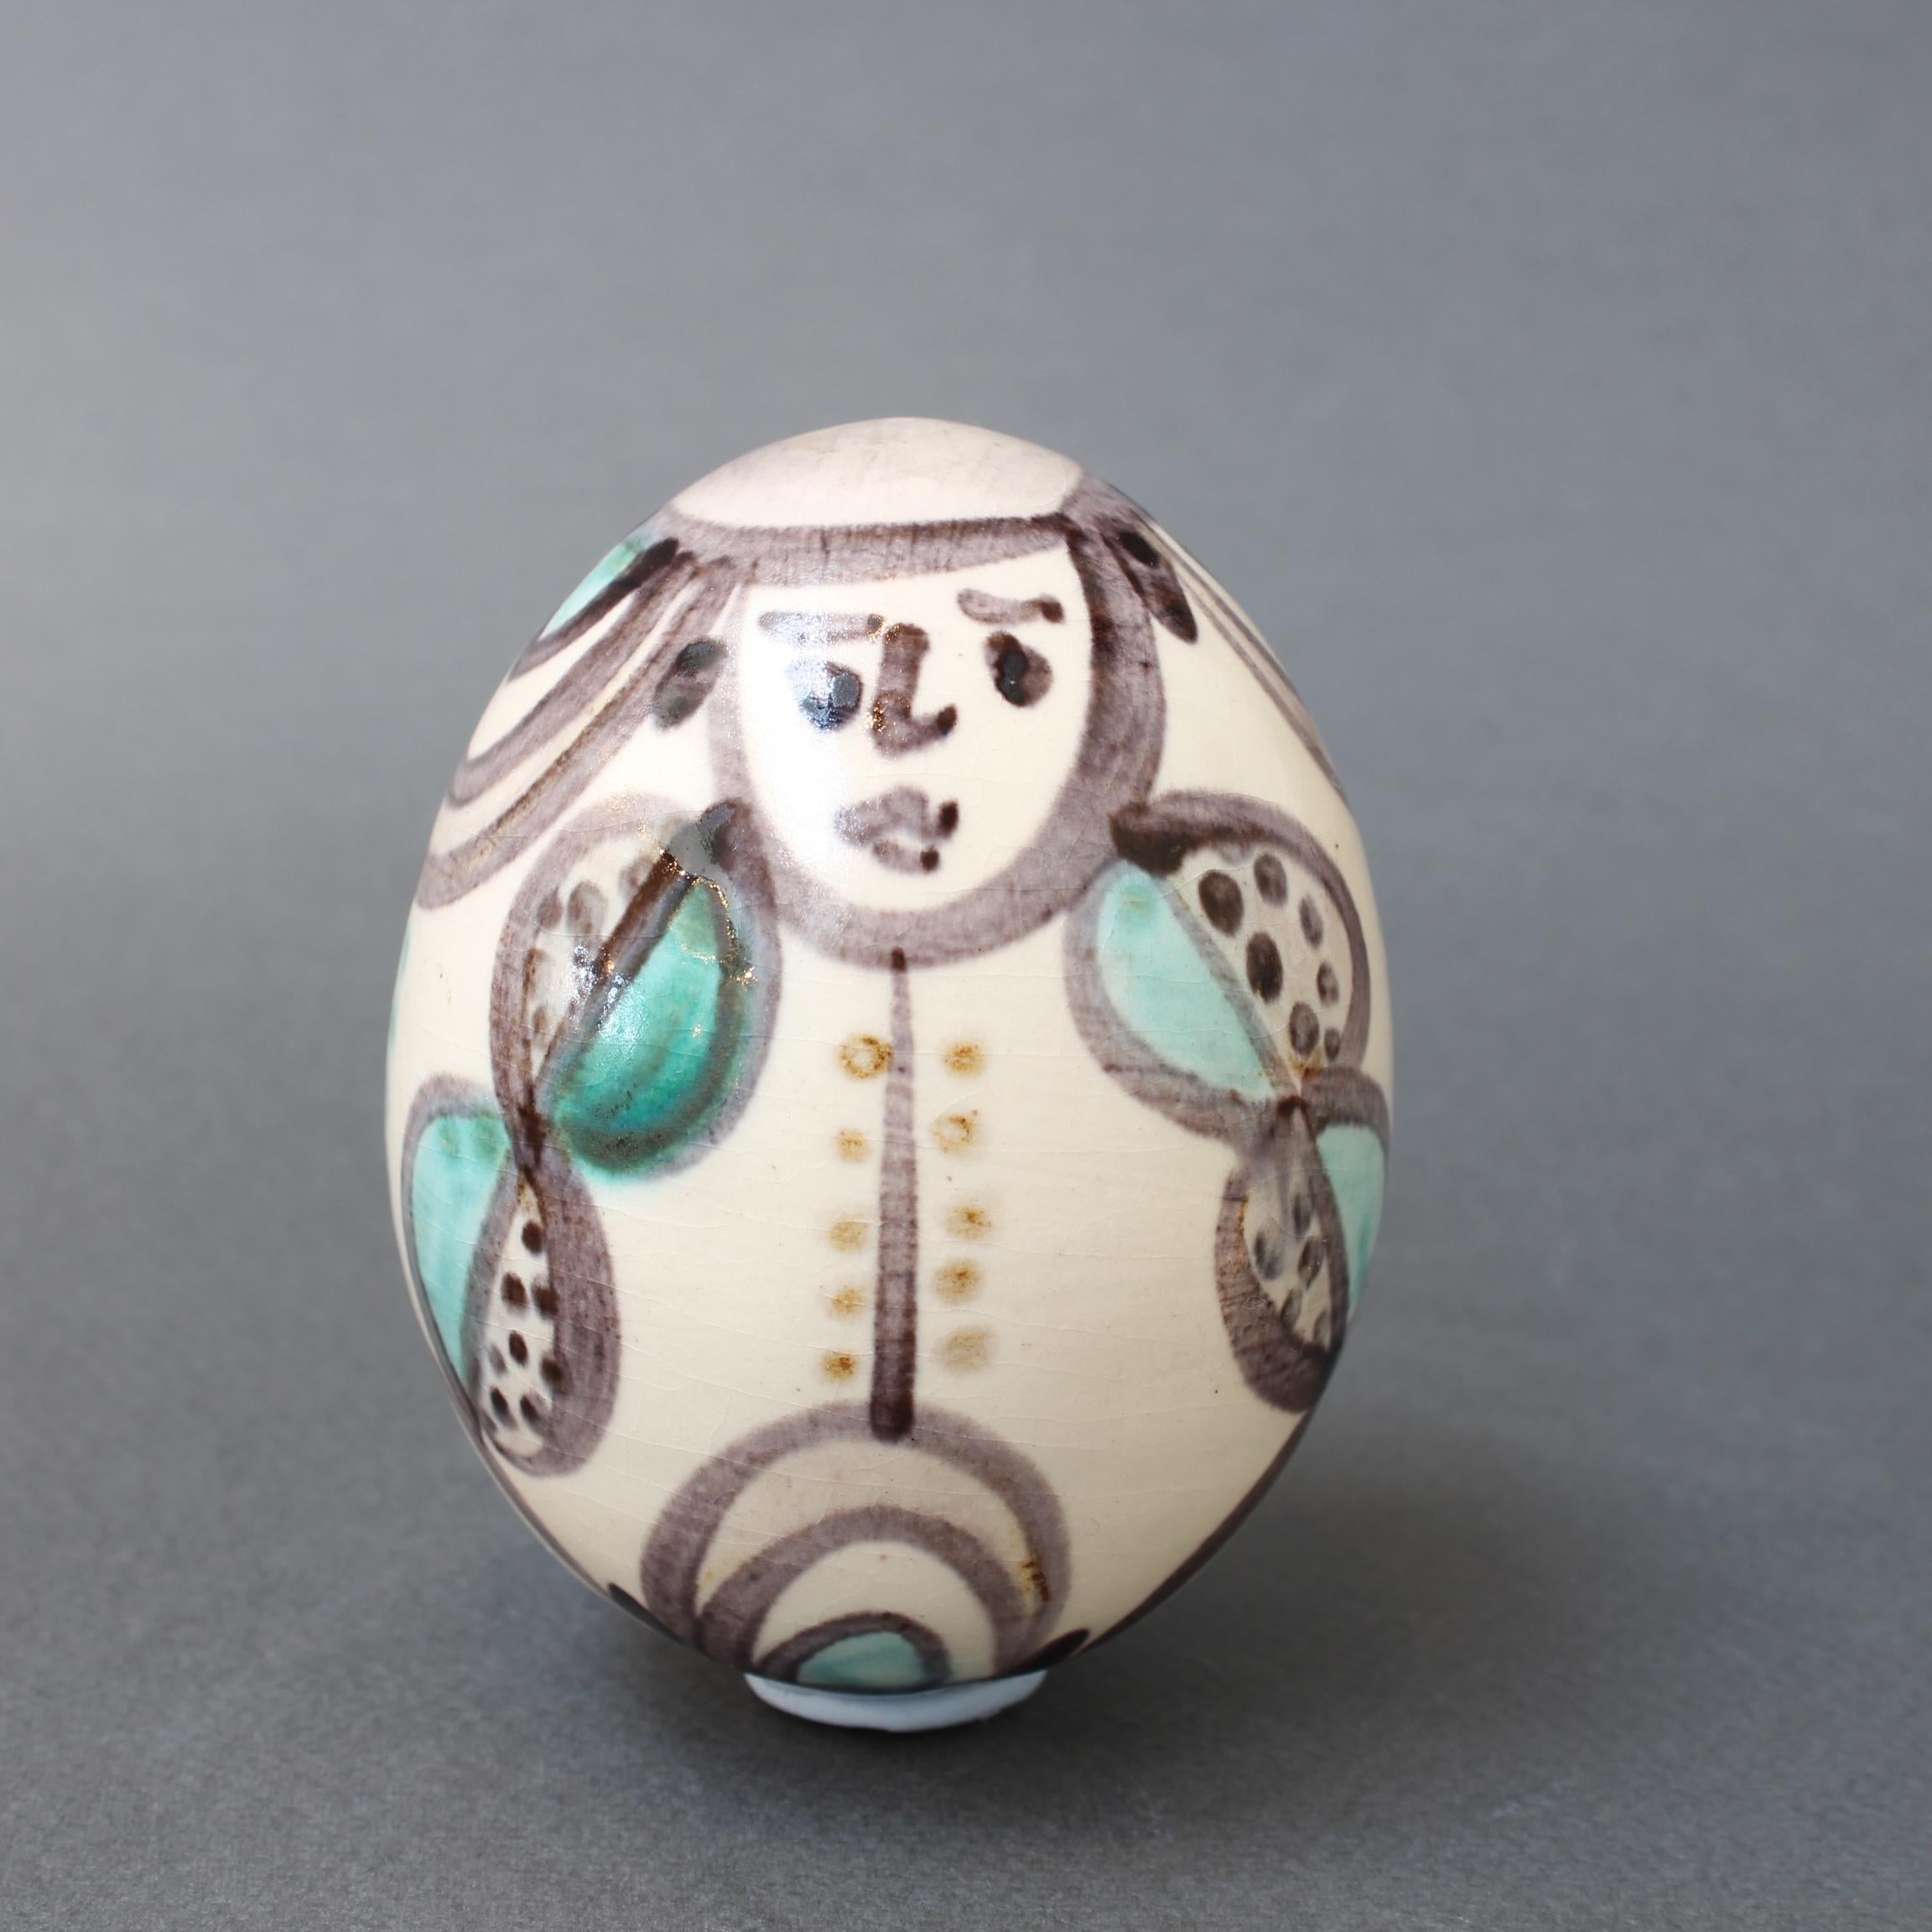 Oeuf vintage en céramique de l'Atelier Madoura, Vallauris, France (circa 1960s). Cette figurine en céramique de la taille d'un œuf est peinte d'un homme stylisé en costume avec un sourire sur le visage. Il s'agit d'une œuvre peinte simplement mais